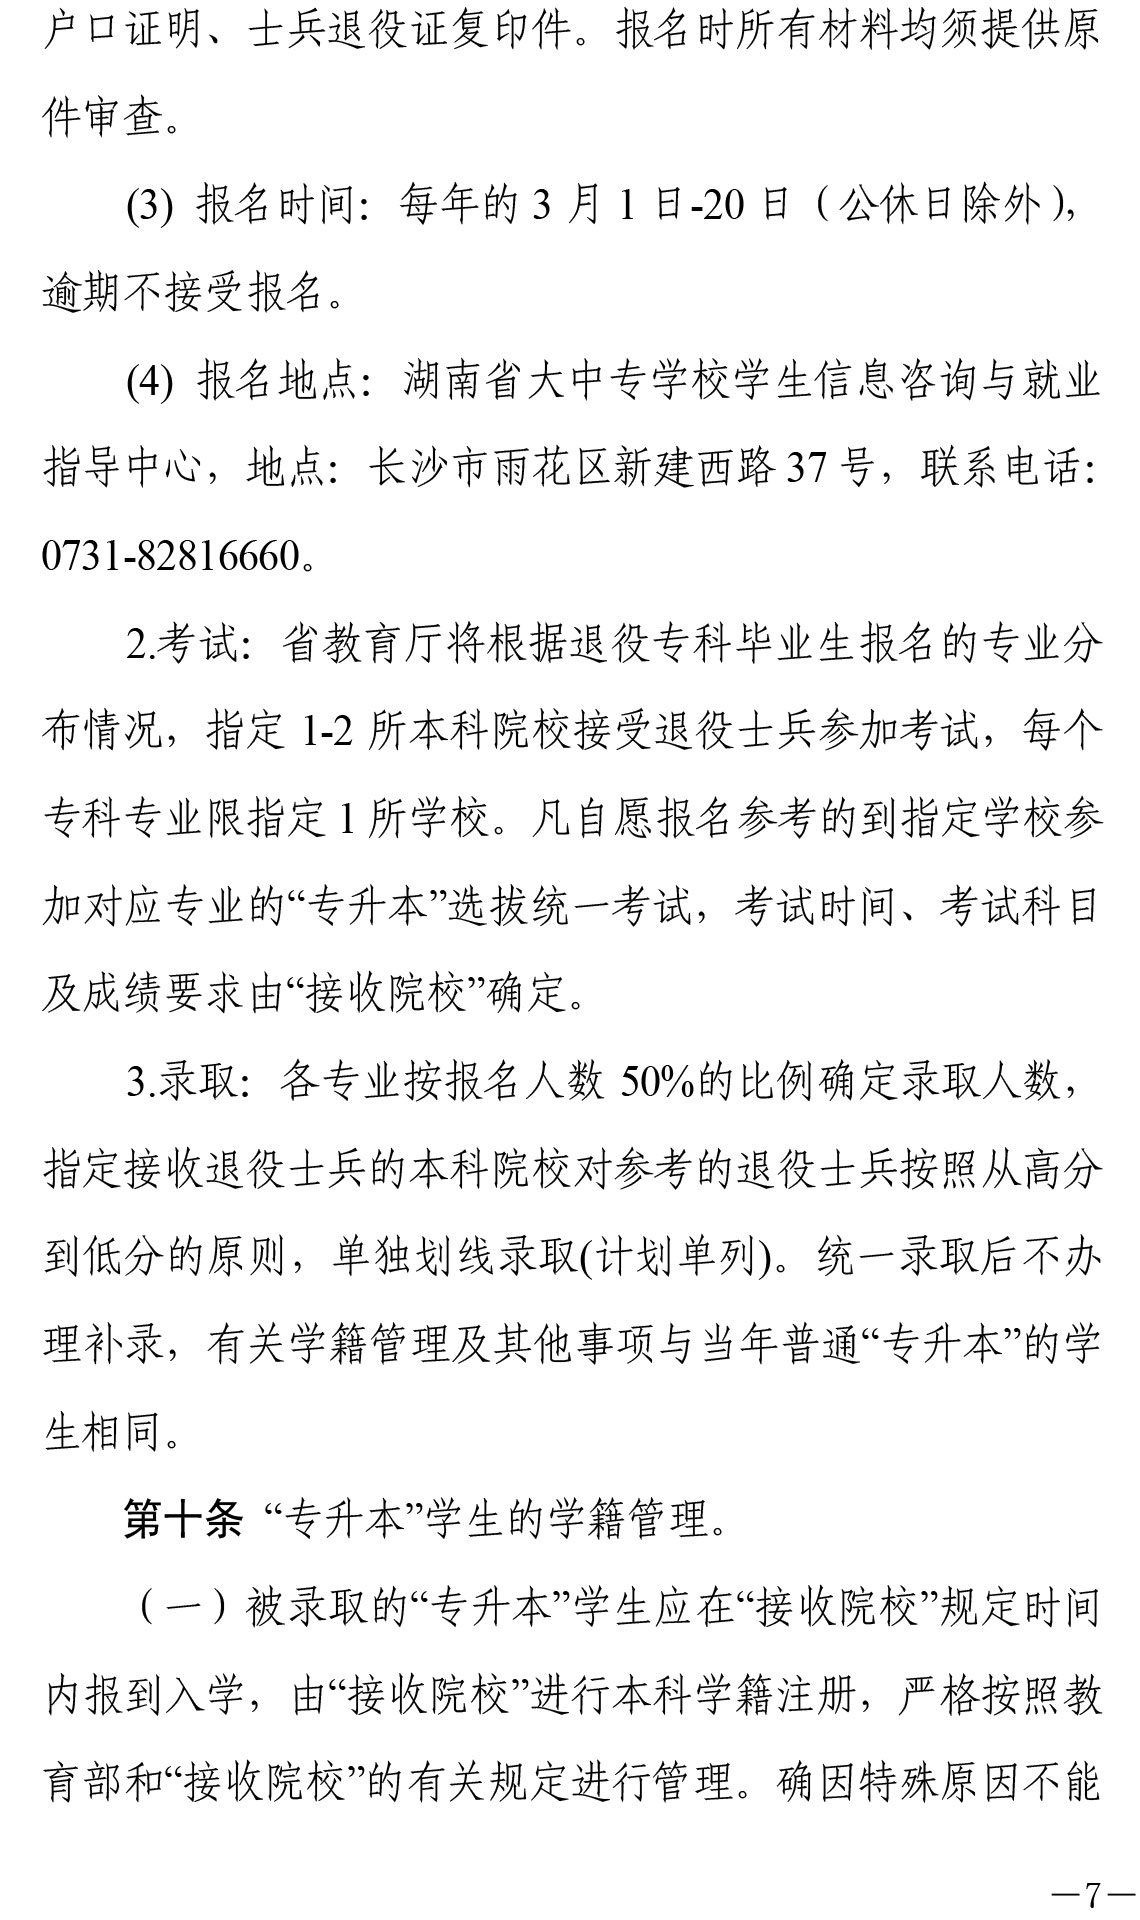 關于印發《湖南省普通高等教育“專升本”工作實施辦法》的通知